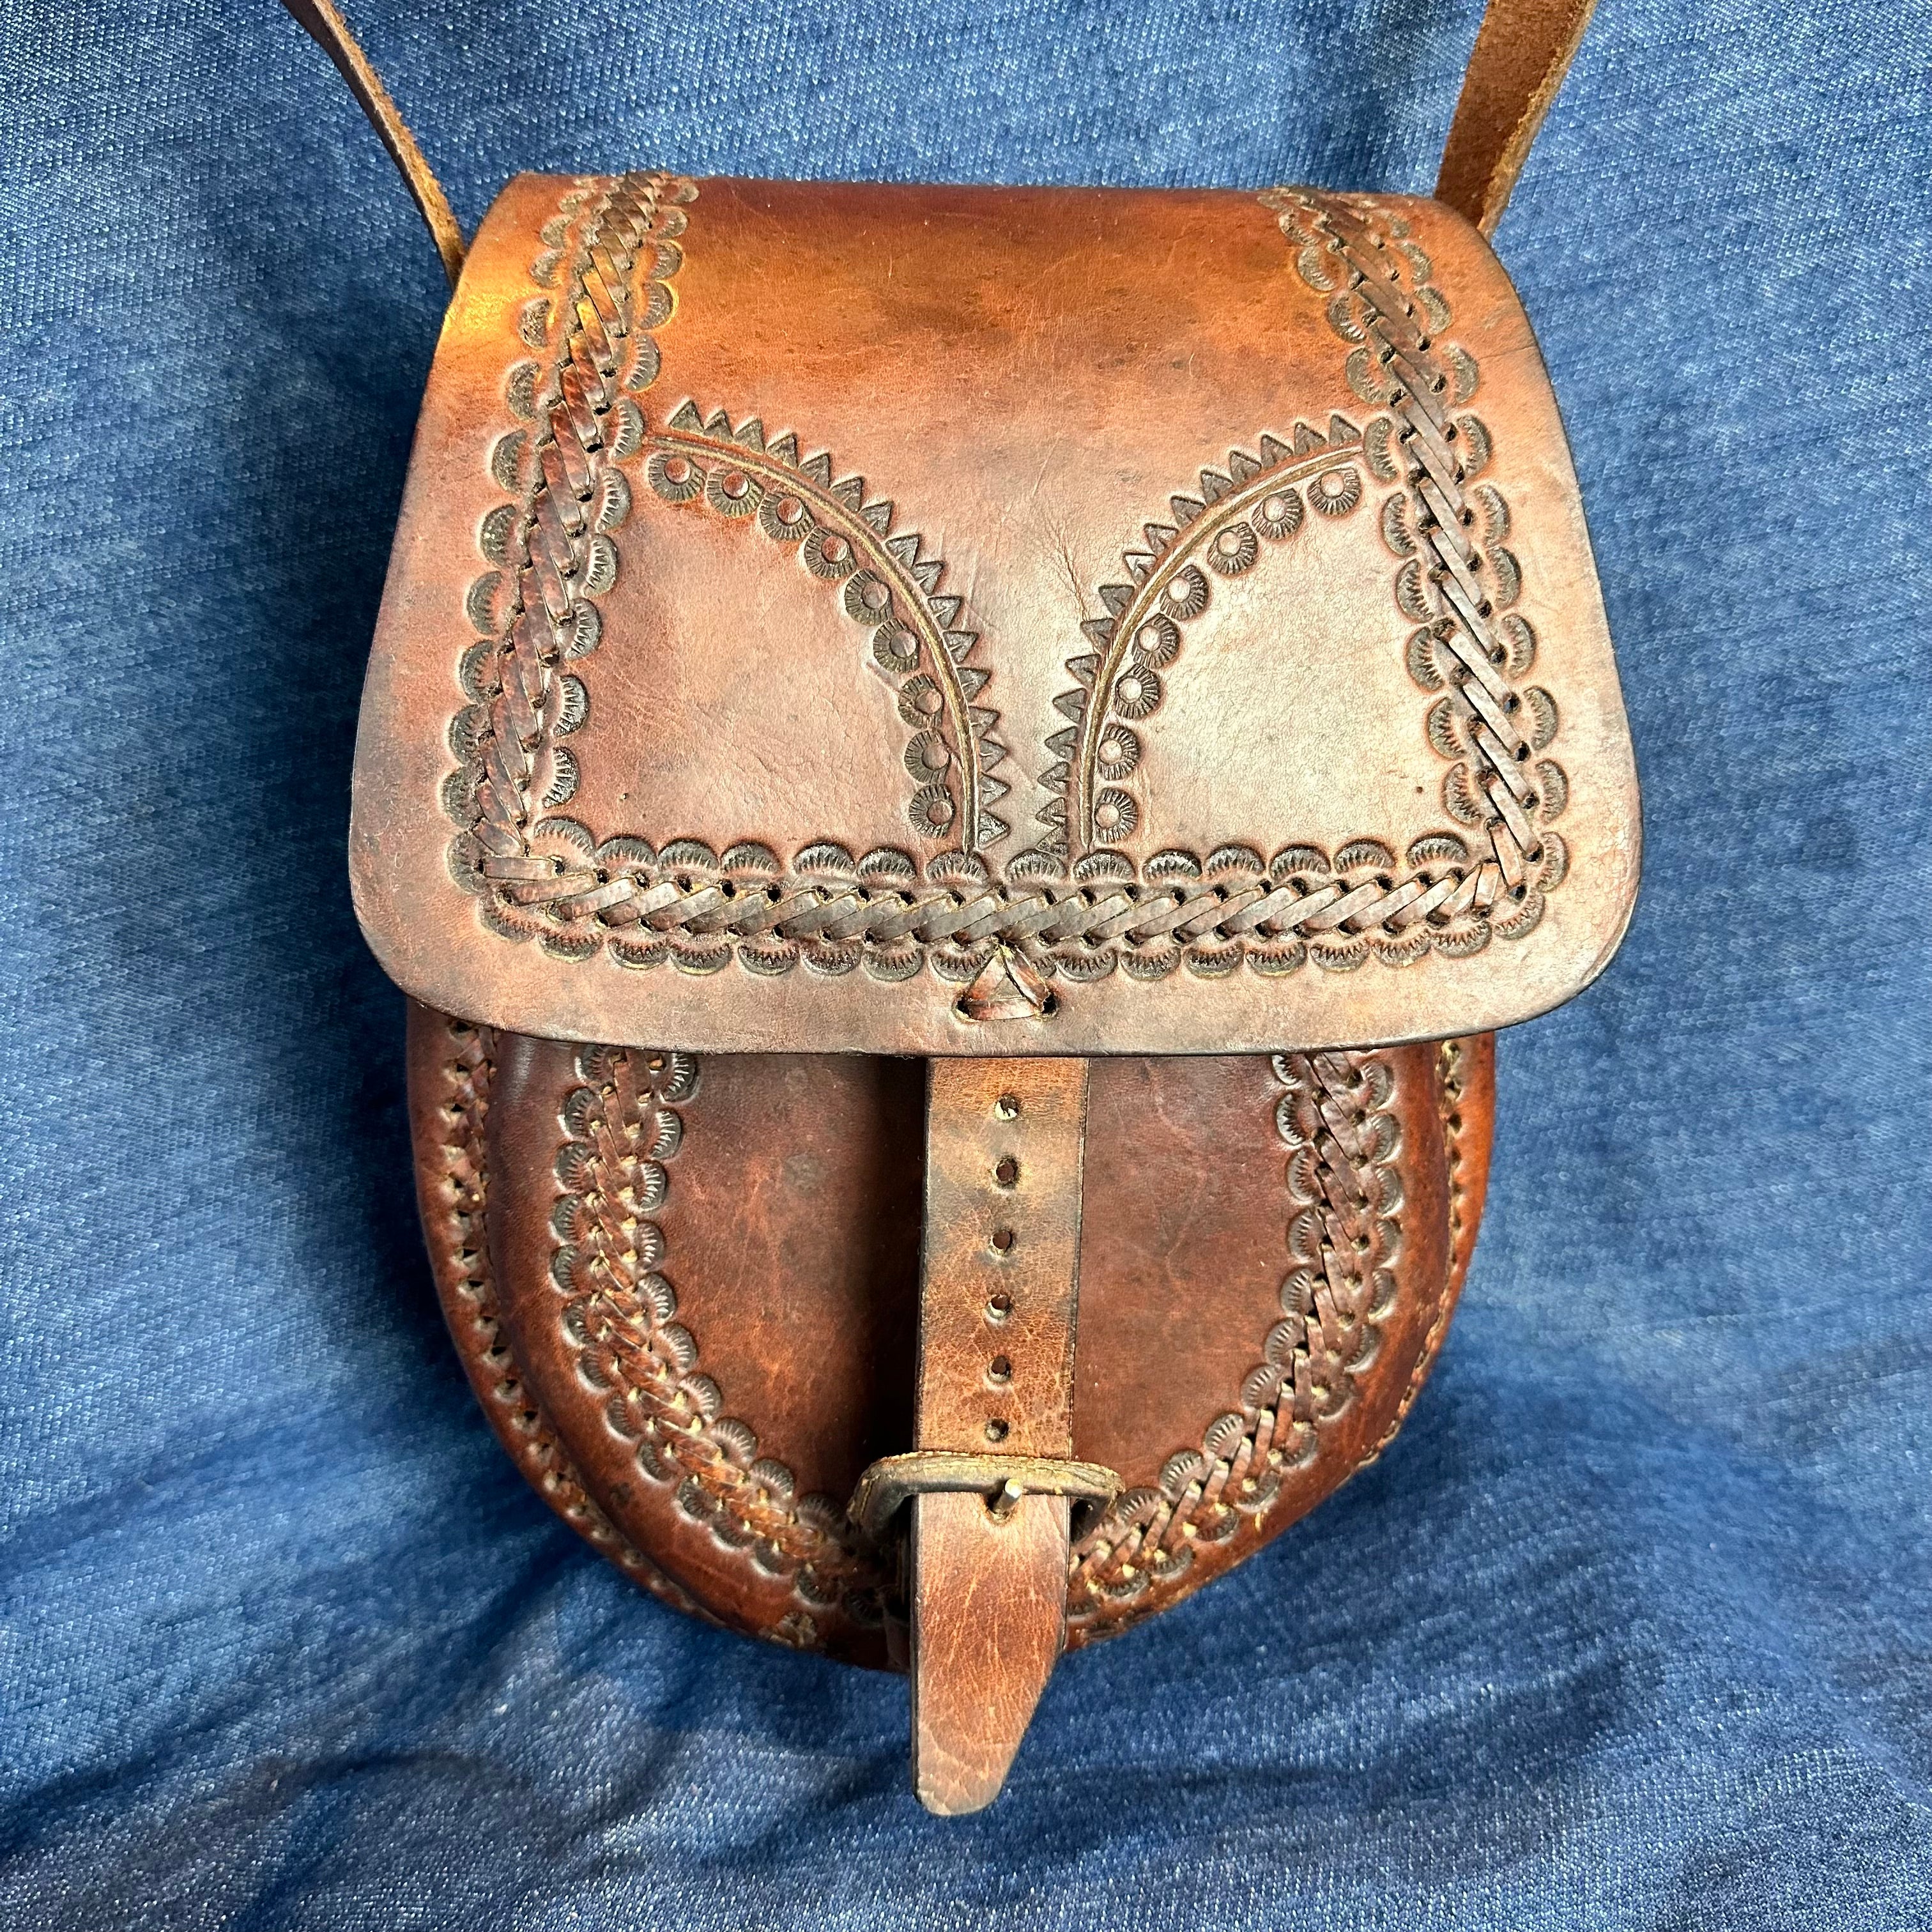 Tooled Leather Bag - Medium